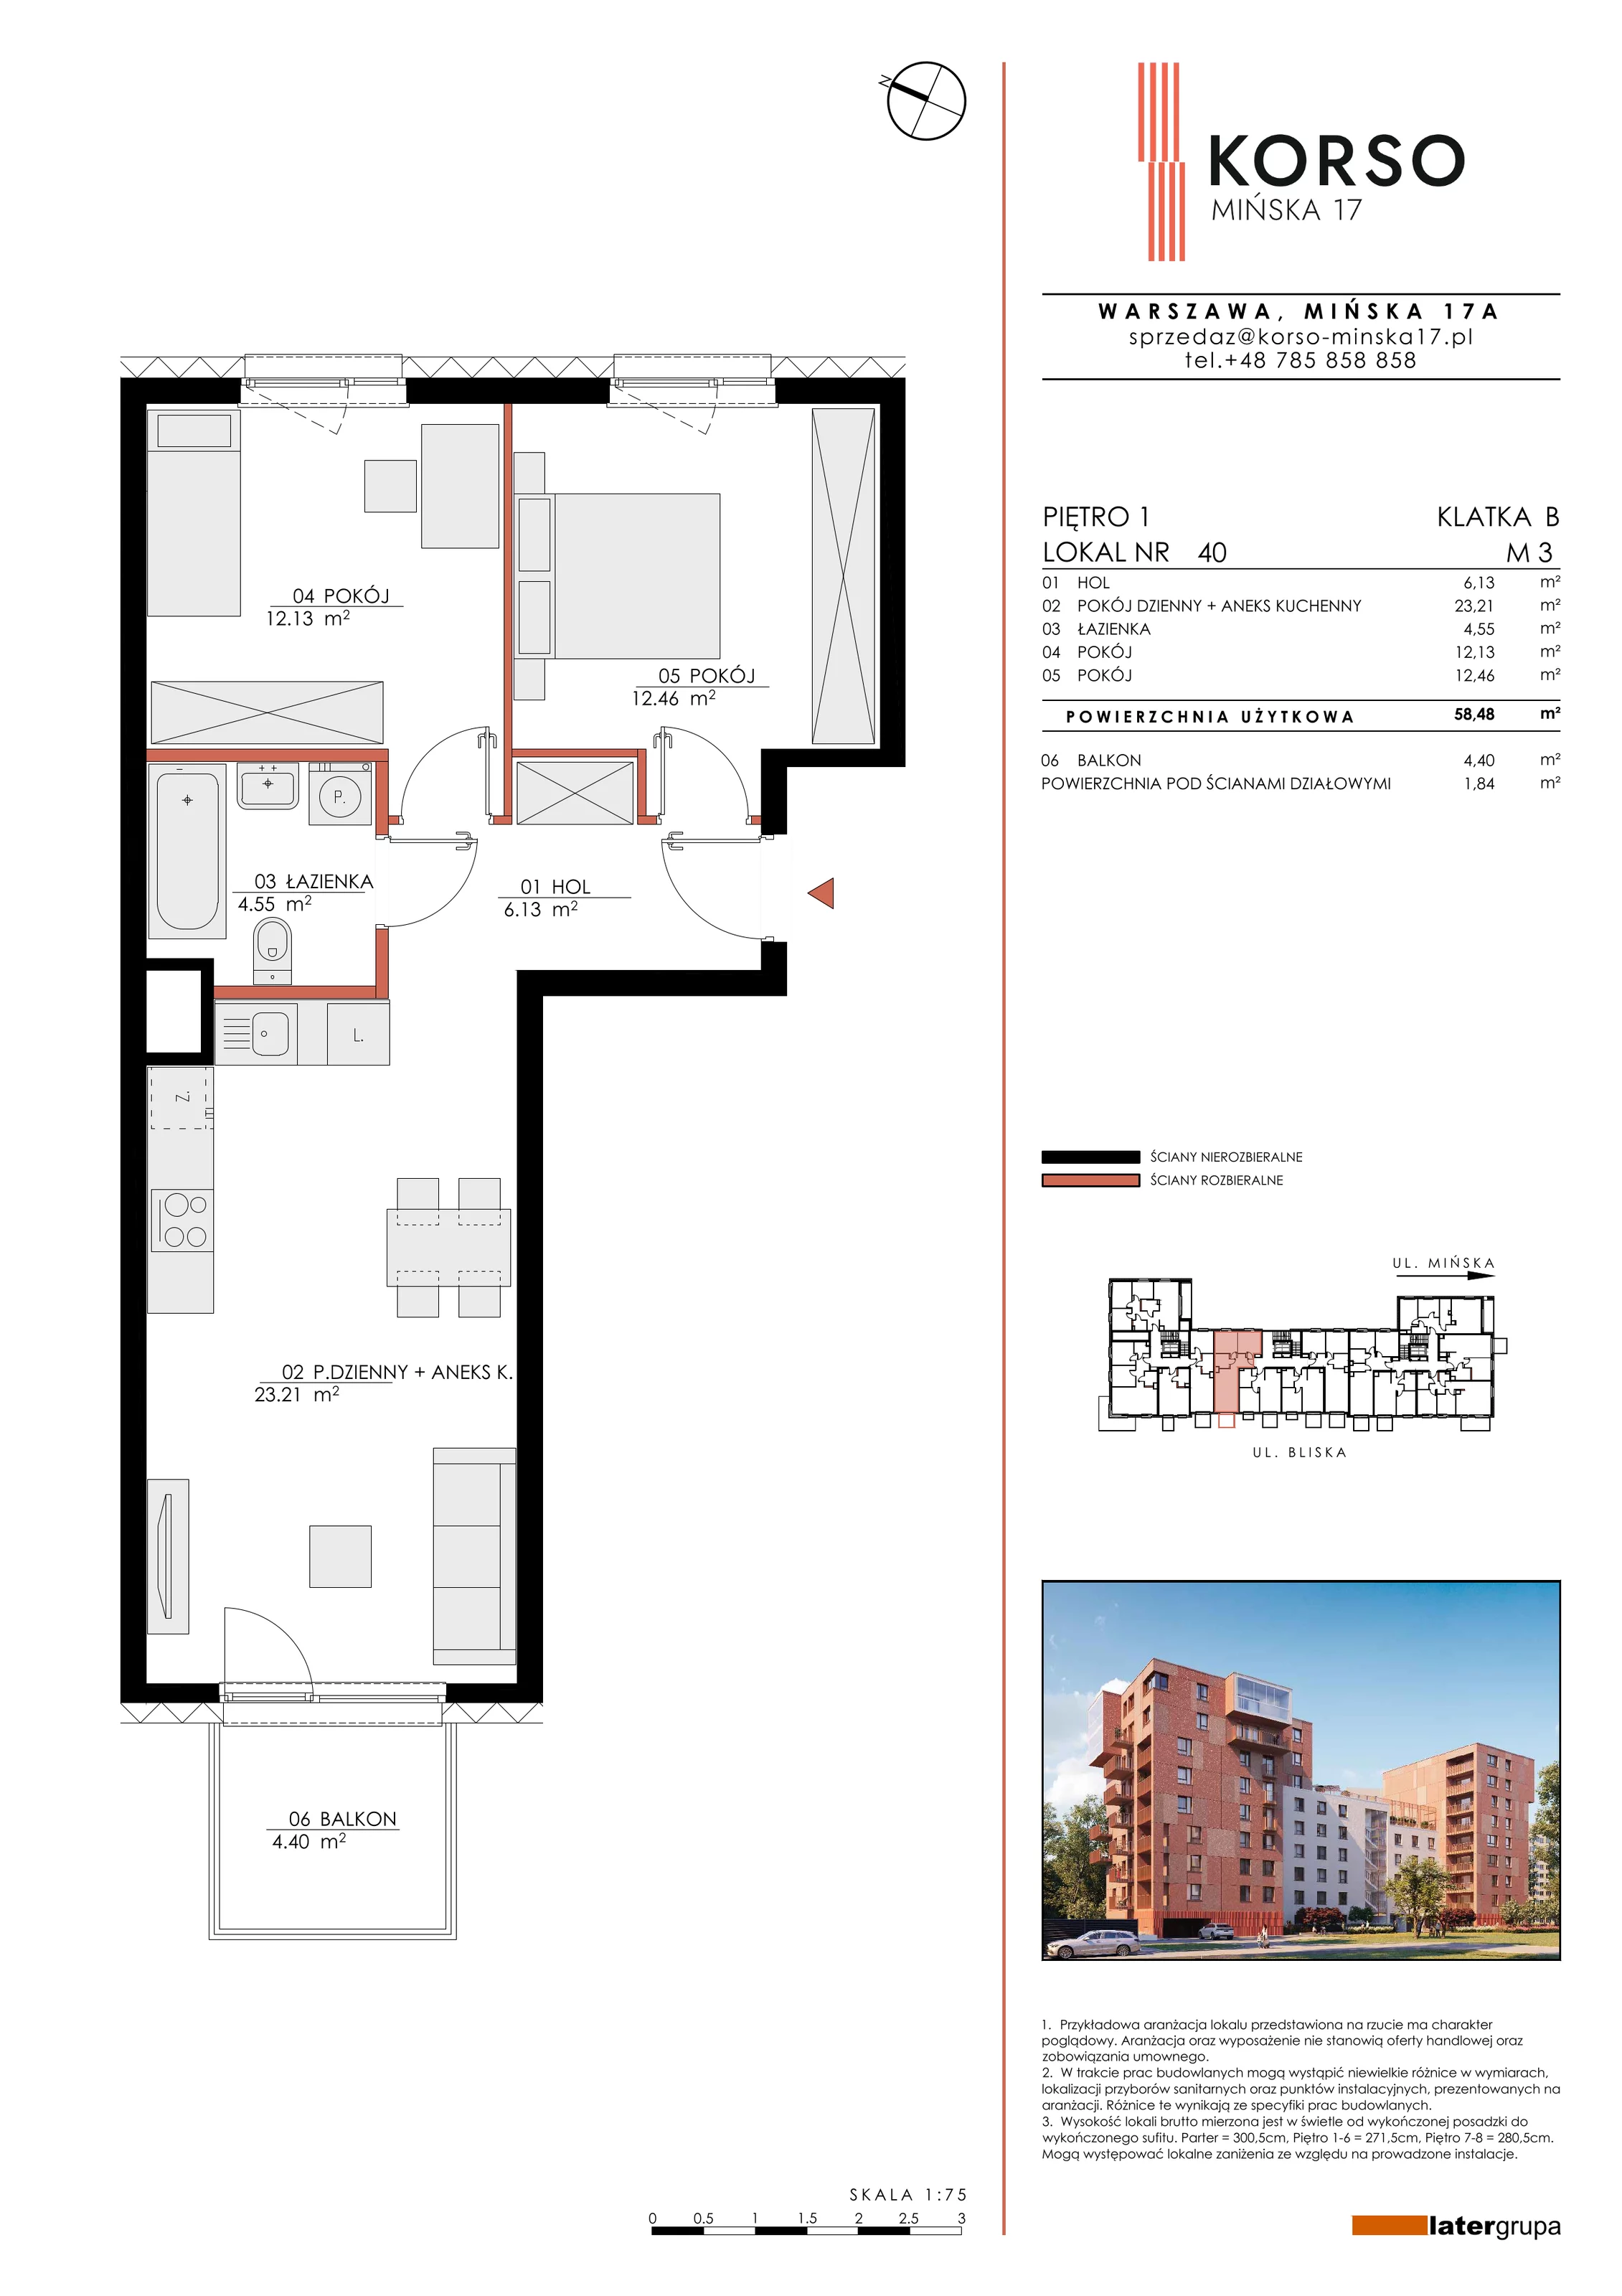 Mieszkanie 58,48 m², piętro 1, oferta nr 40, KORSO Mińska 17, Warszawa, Praga Południe, Kamionek, ul. Mińska 17